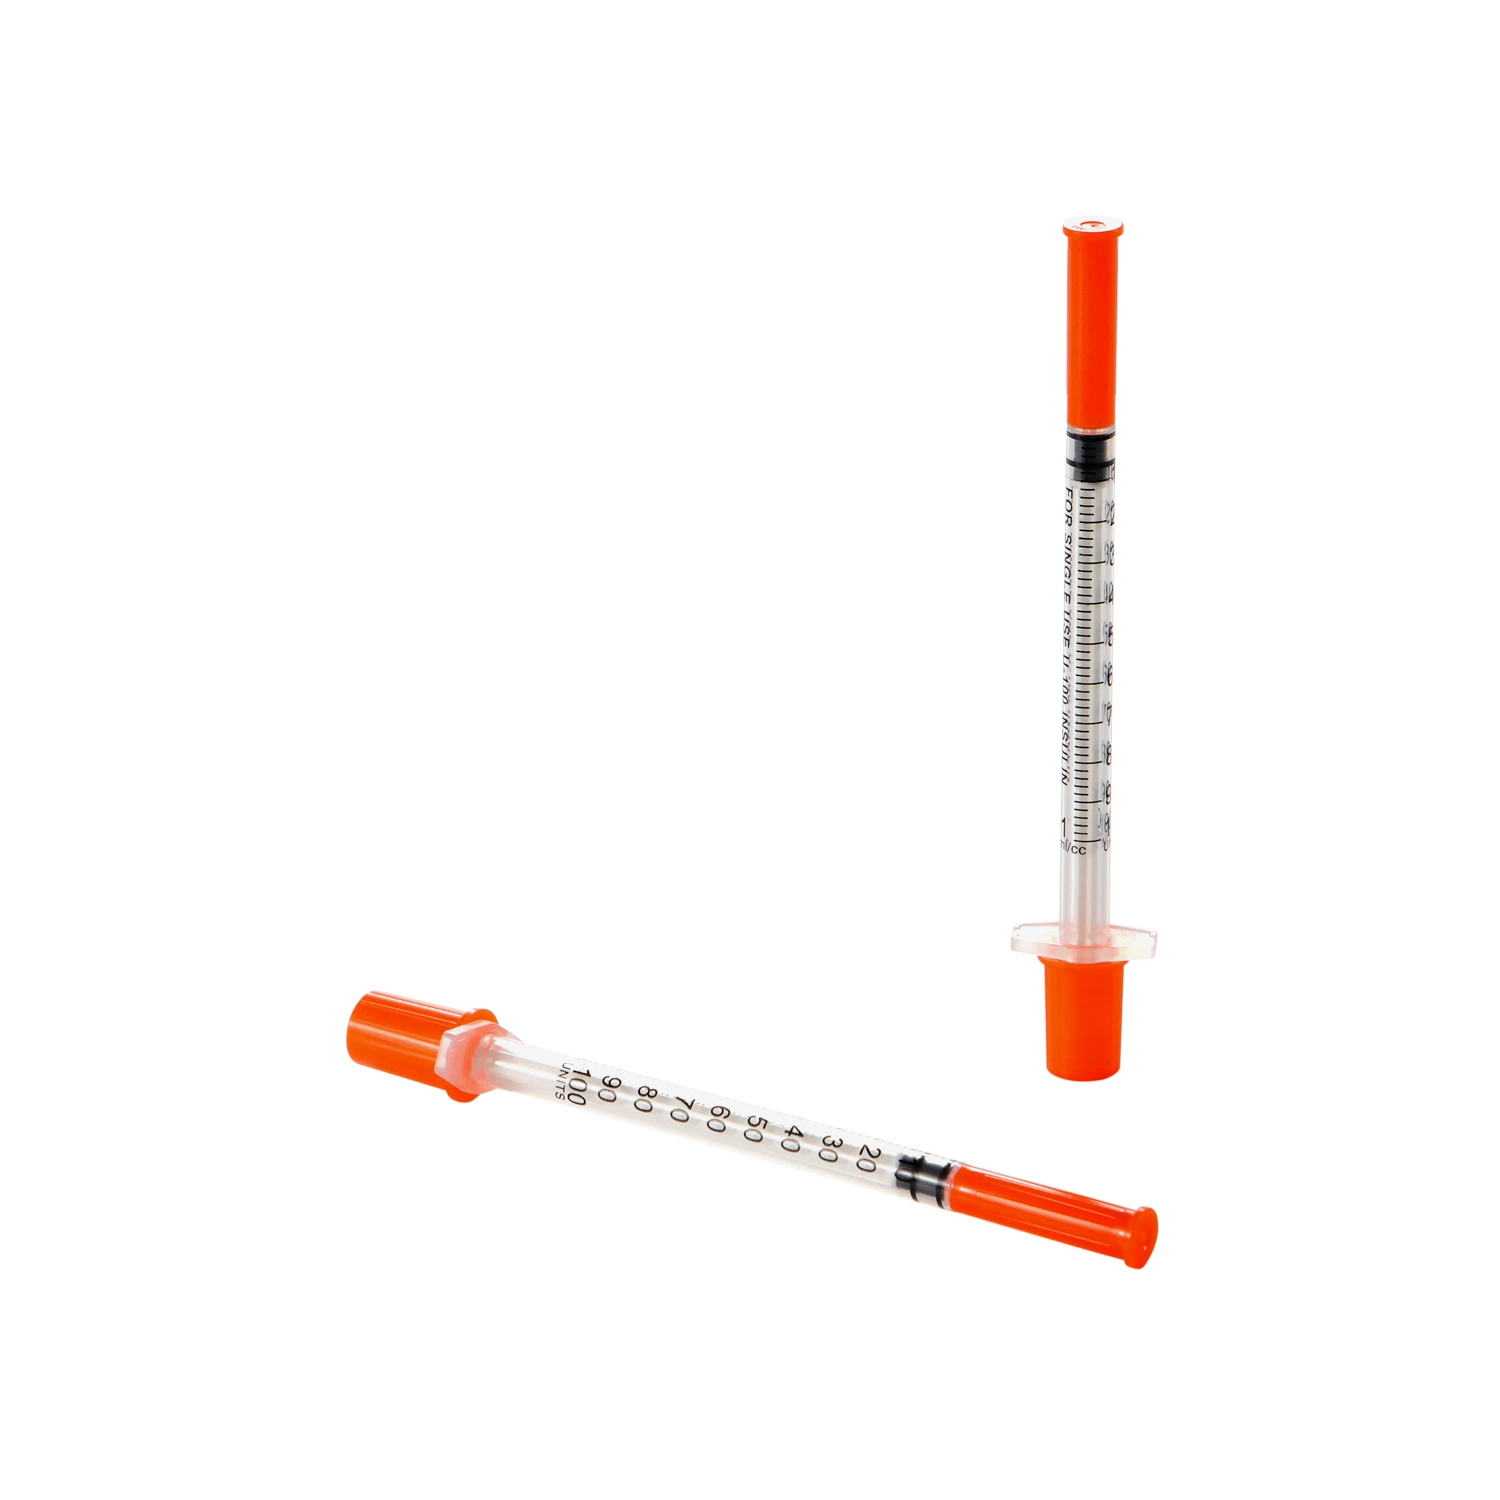 Seringue en plastique jetable pour injection médicale d'insuline avec aiguille hypodermique.